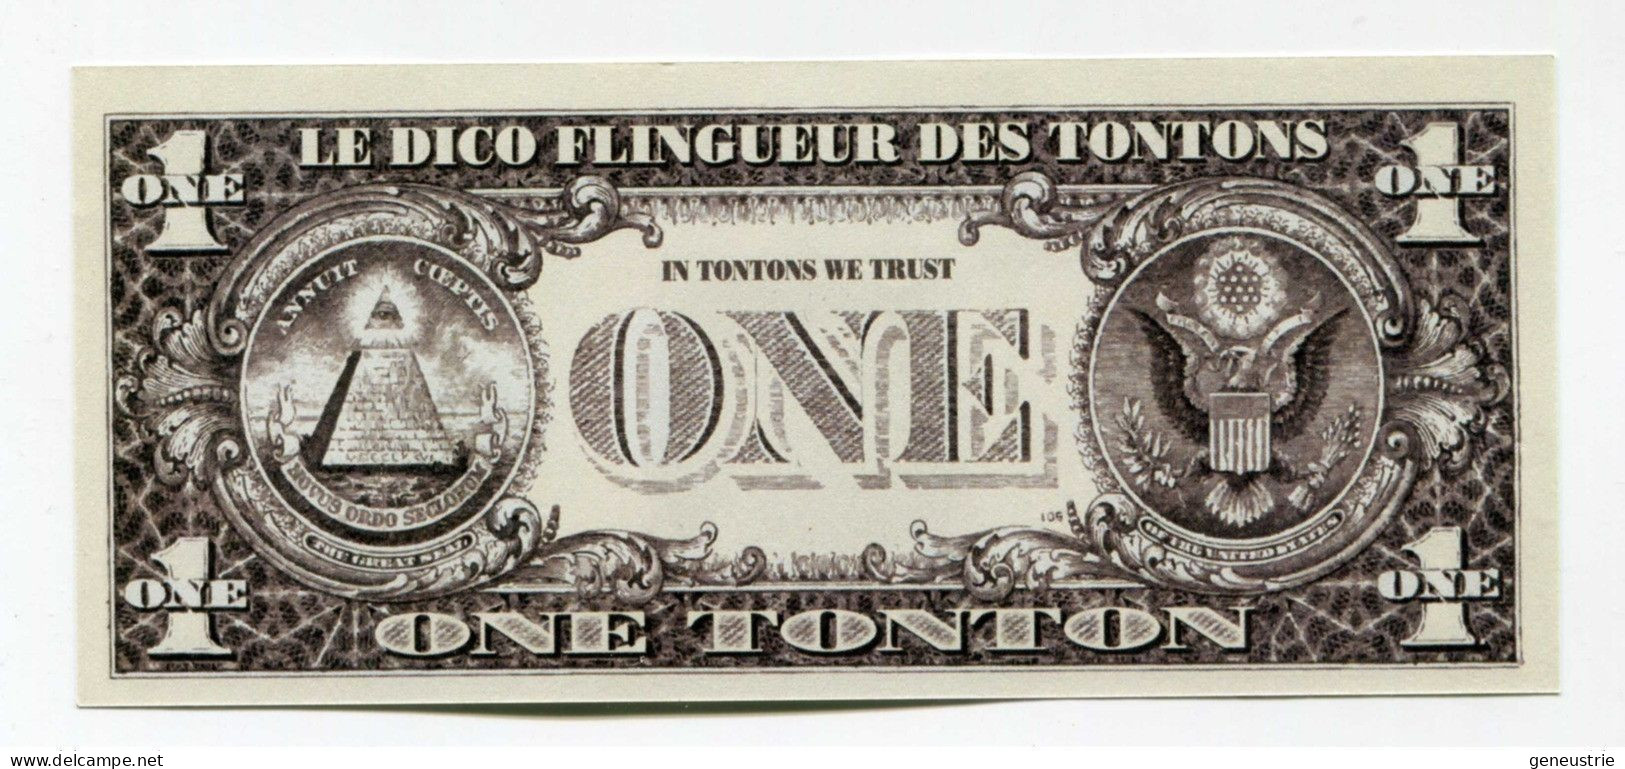 Série De 5 Billets Fantaisie Inspirés Du Dollar "One Tonton - Les Tontons Flingueurs - Rueil-Malmaison" Cinéma - Ficción & Especímenes